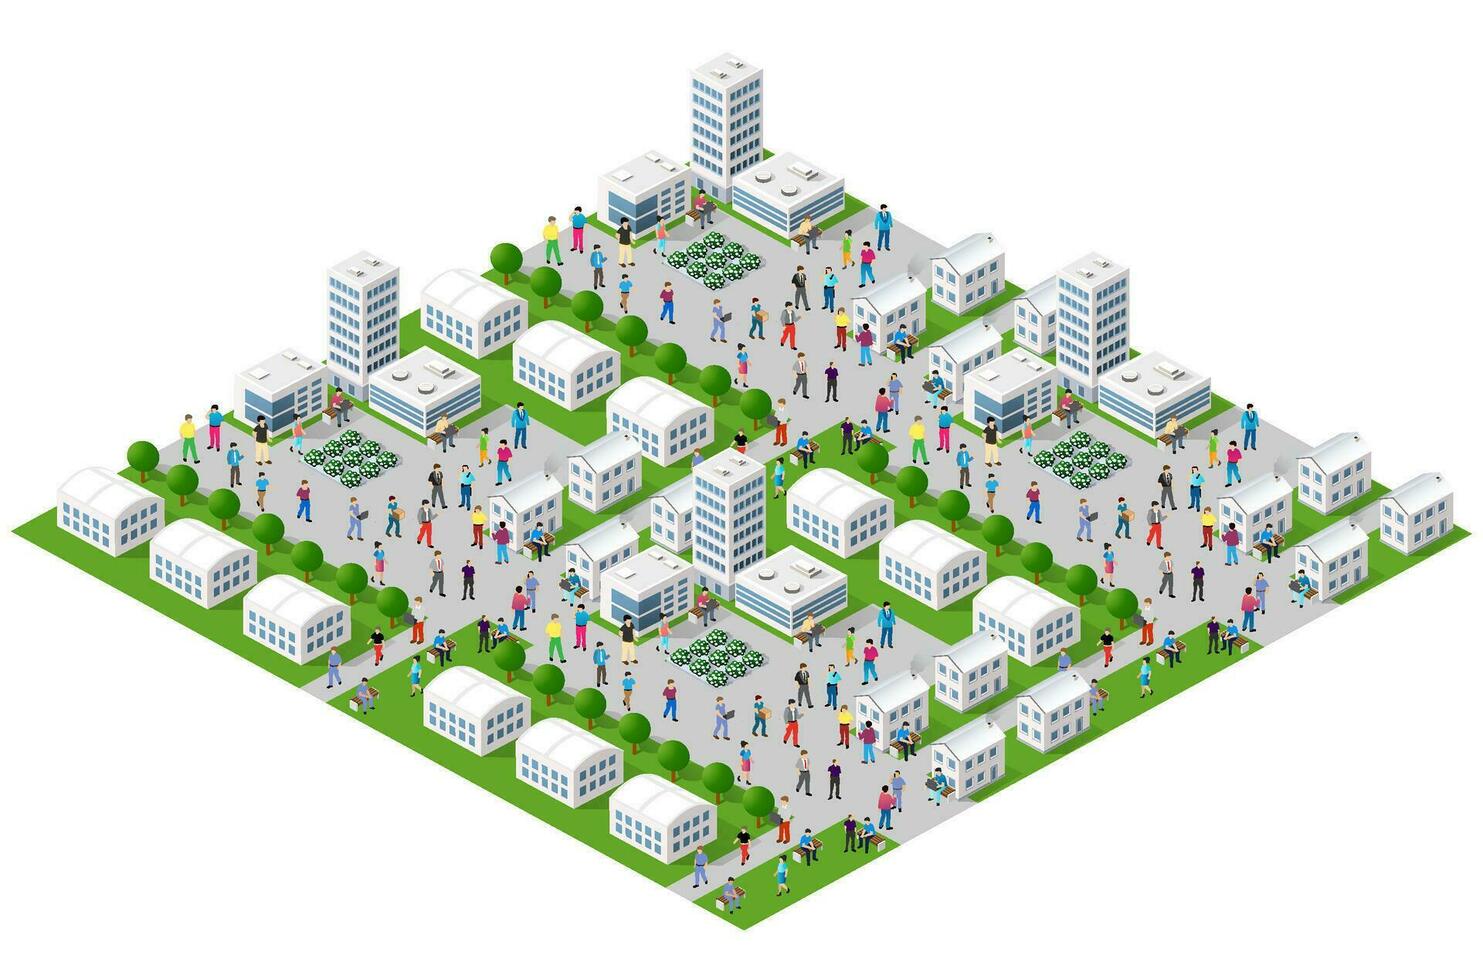 el ciudad estilo de vida escena en urbano temas con casas, carros, gente, arboles y parques concepto isométrica 3d ilustraciones vector para diseño, juegos, web